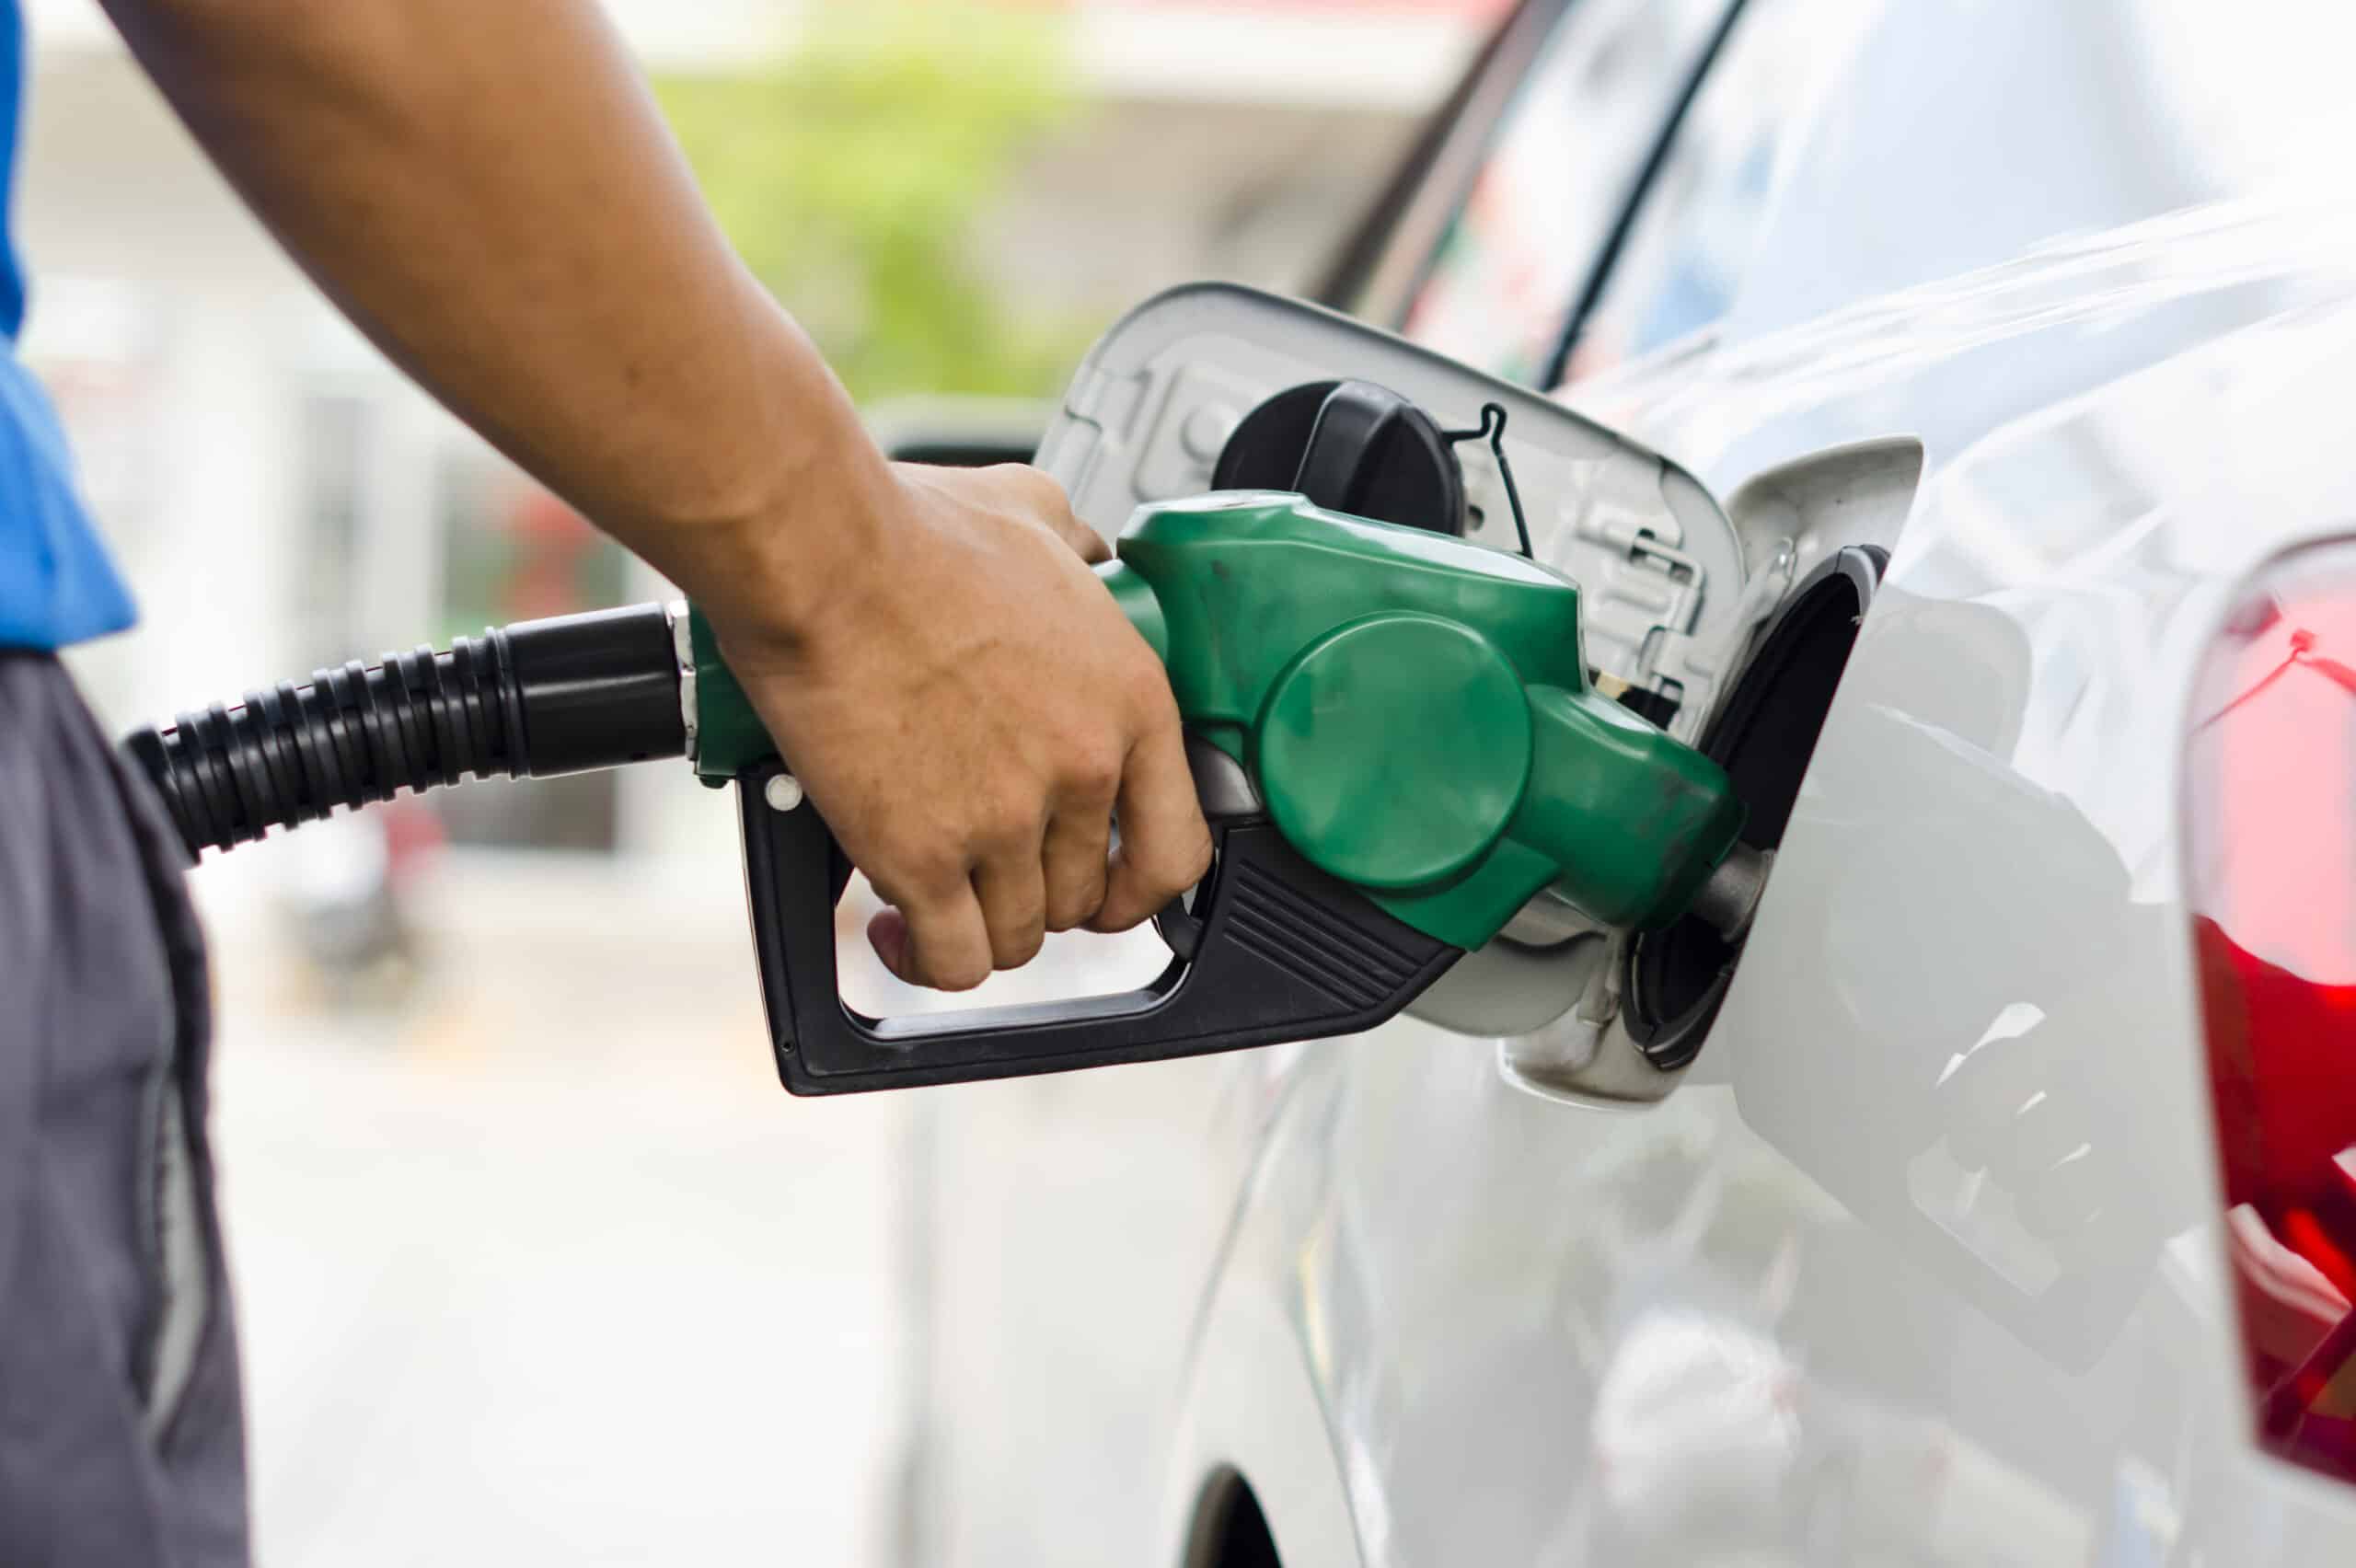 A Ticket Log levantou um relatório sobre os preços do litro da gasolina durante a primeira quinzena de dezembro de 2022. Os dados mostram que o valor mais baixo se encontra na região Sudeste brasileira, onde o litro chegou a R$ 5,14.